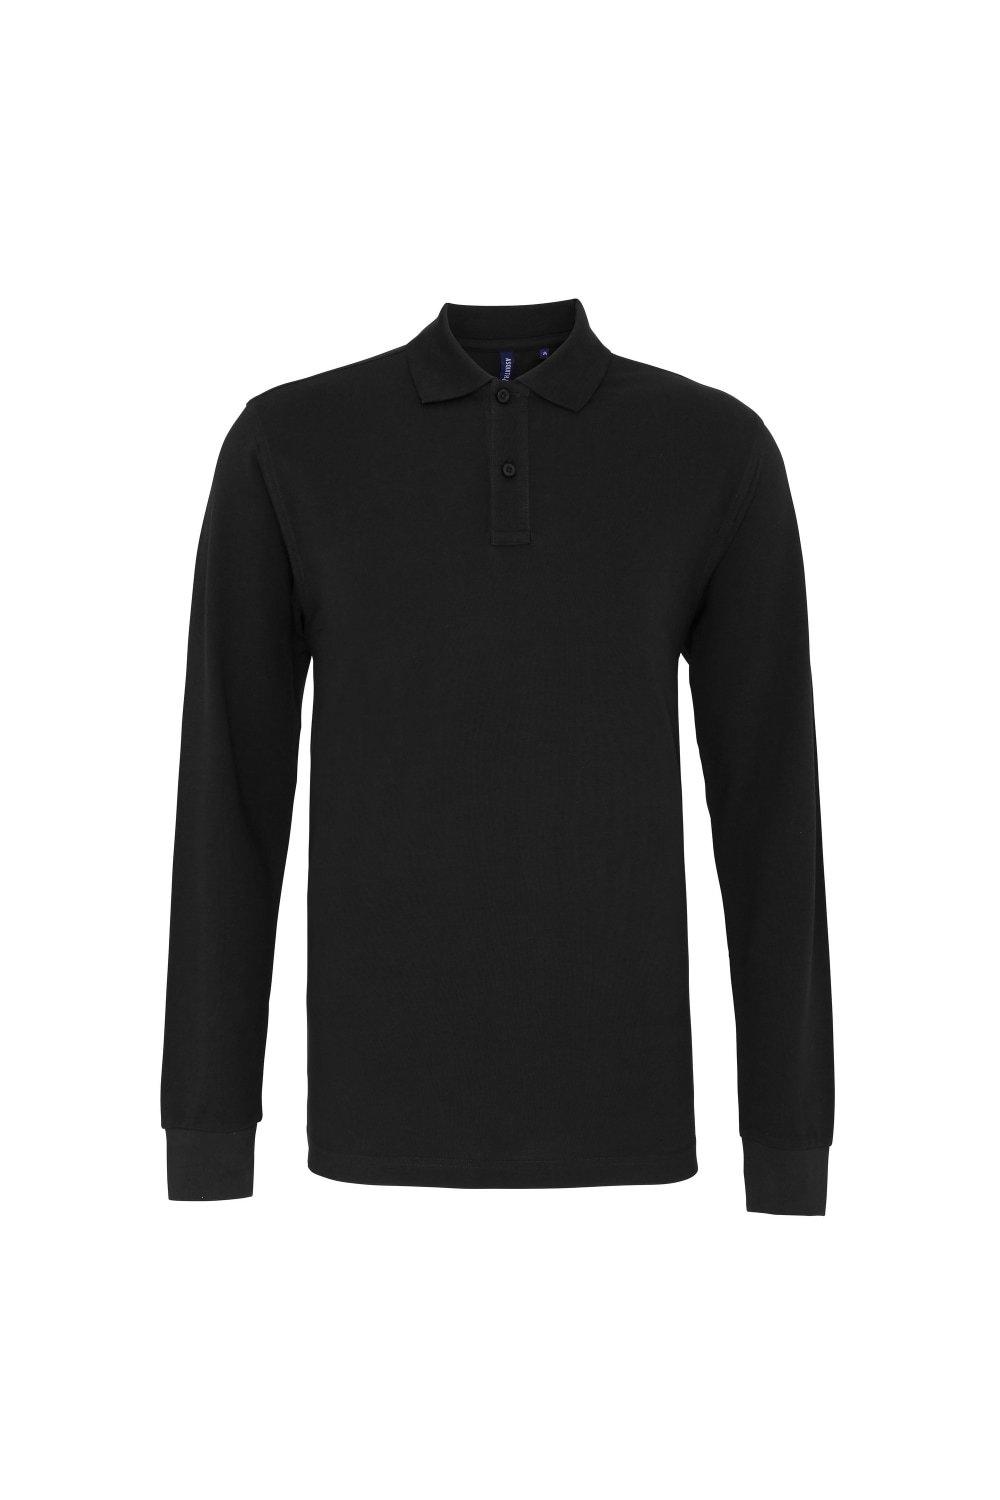 Рубашка поло классического кроя с длинными рукавами Asquith & Fox, черный рубашка поло с длинными рукавами lyle